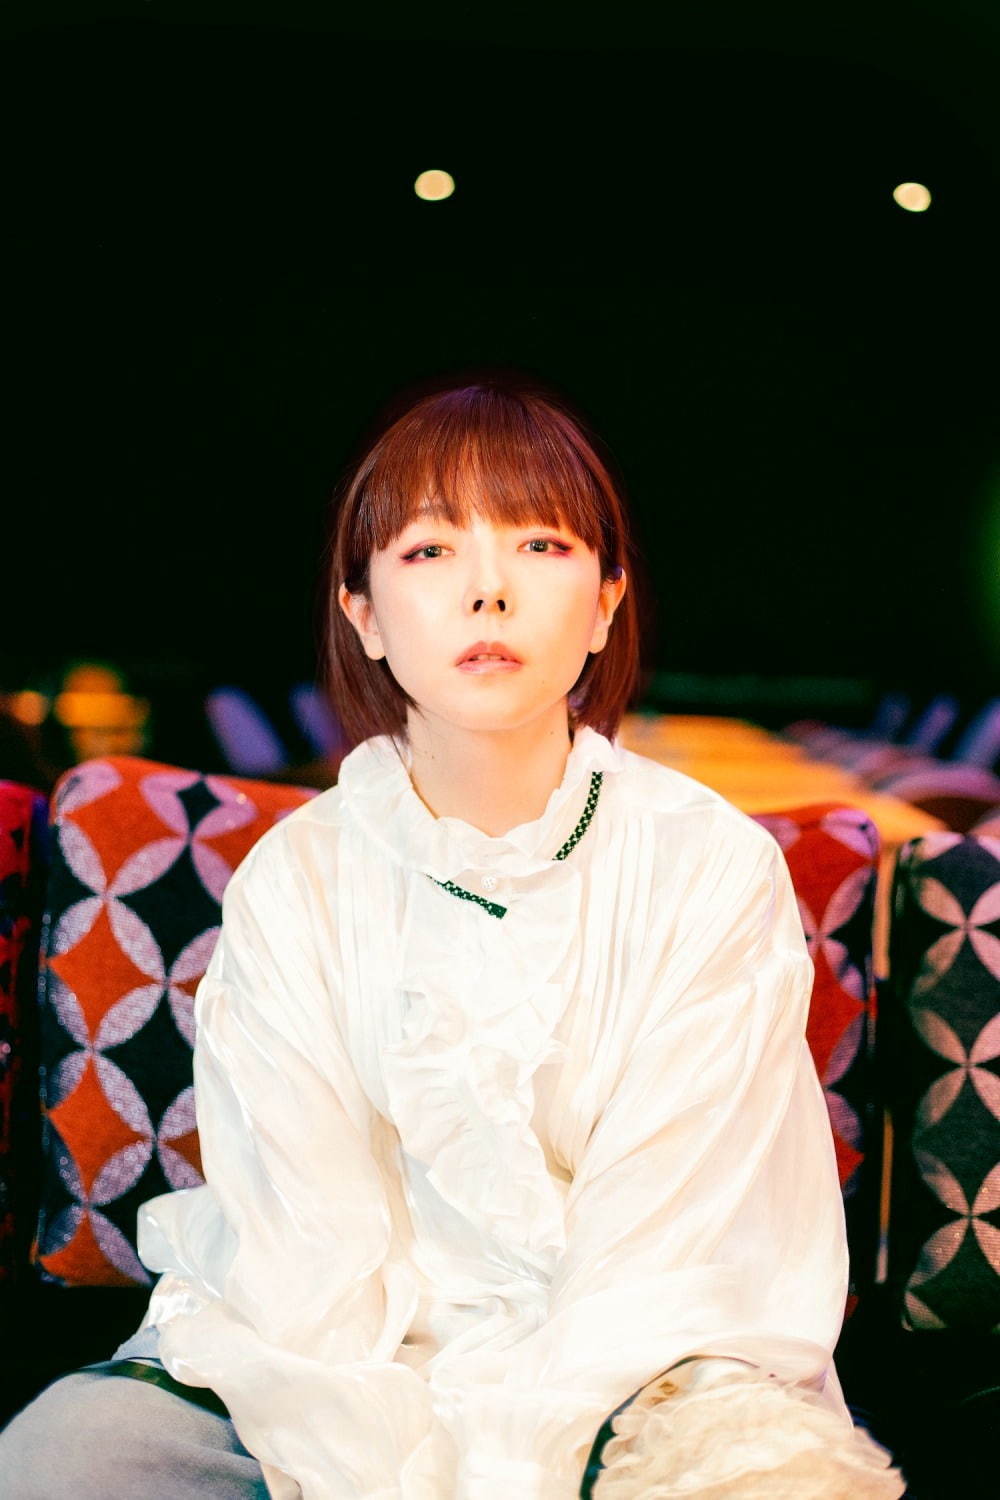 aikoの14thアルバム『どうしたって伝えられないから』全13曲収録「青空